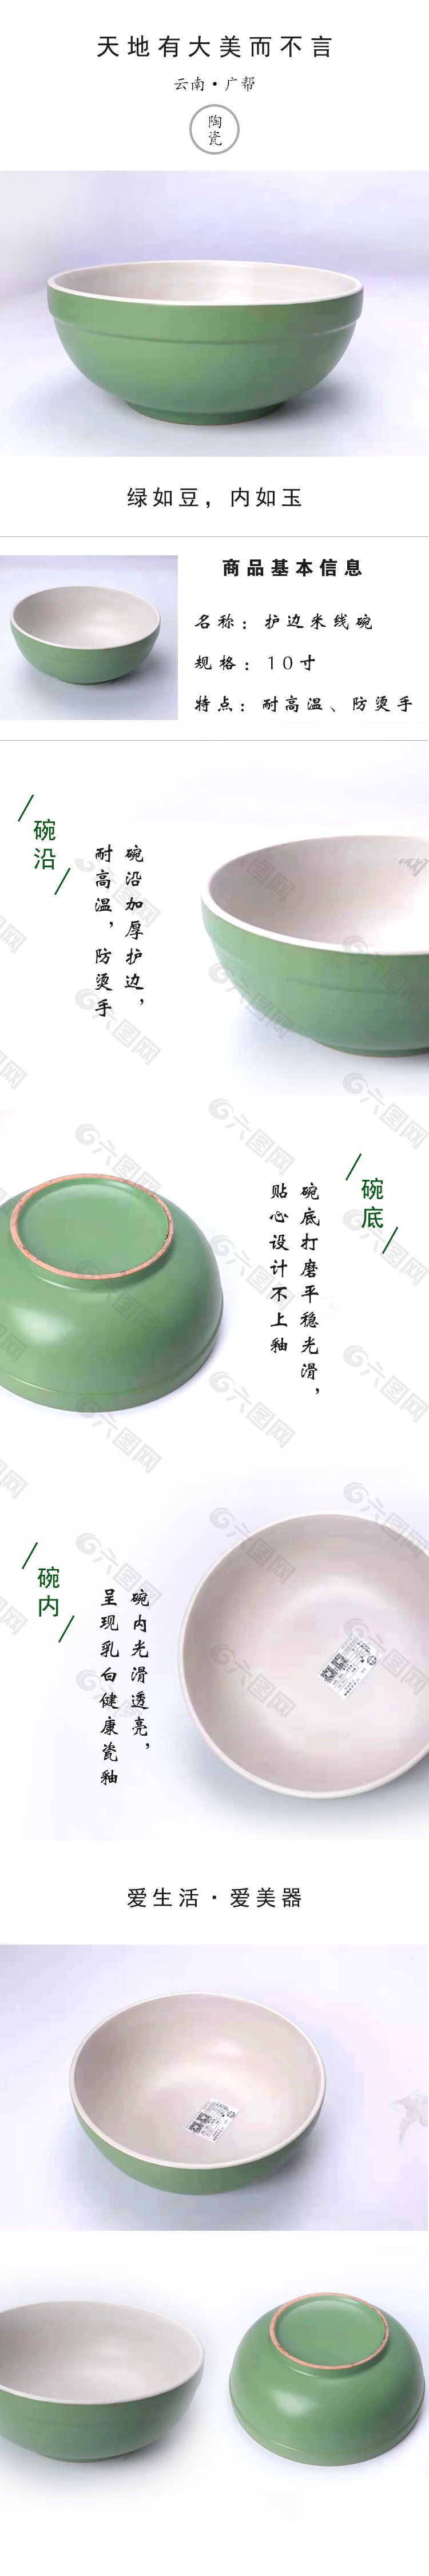 绿色陶瓷碗